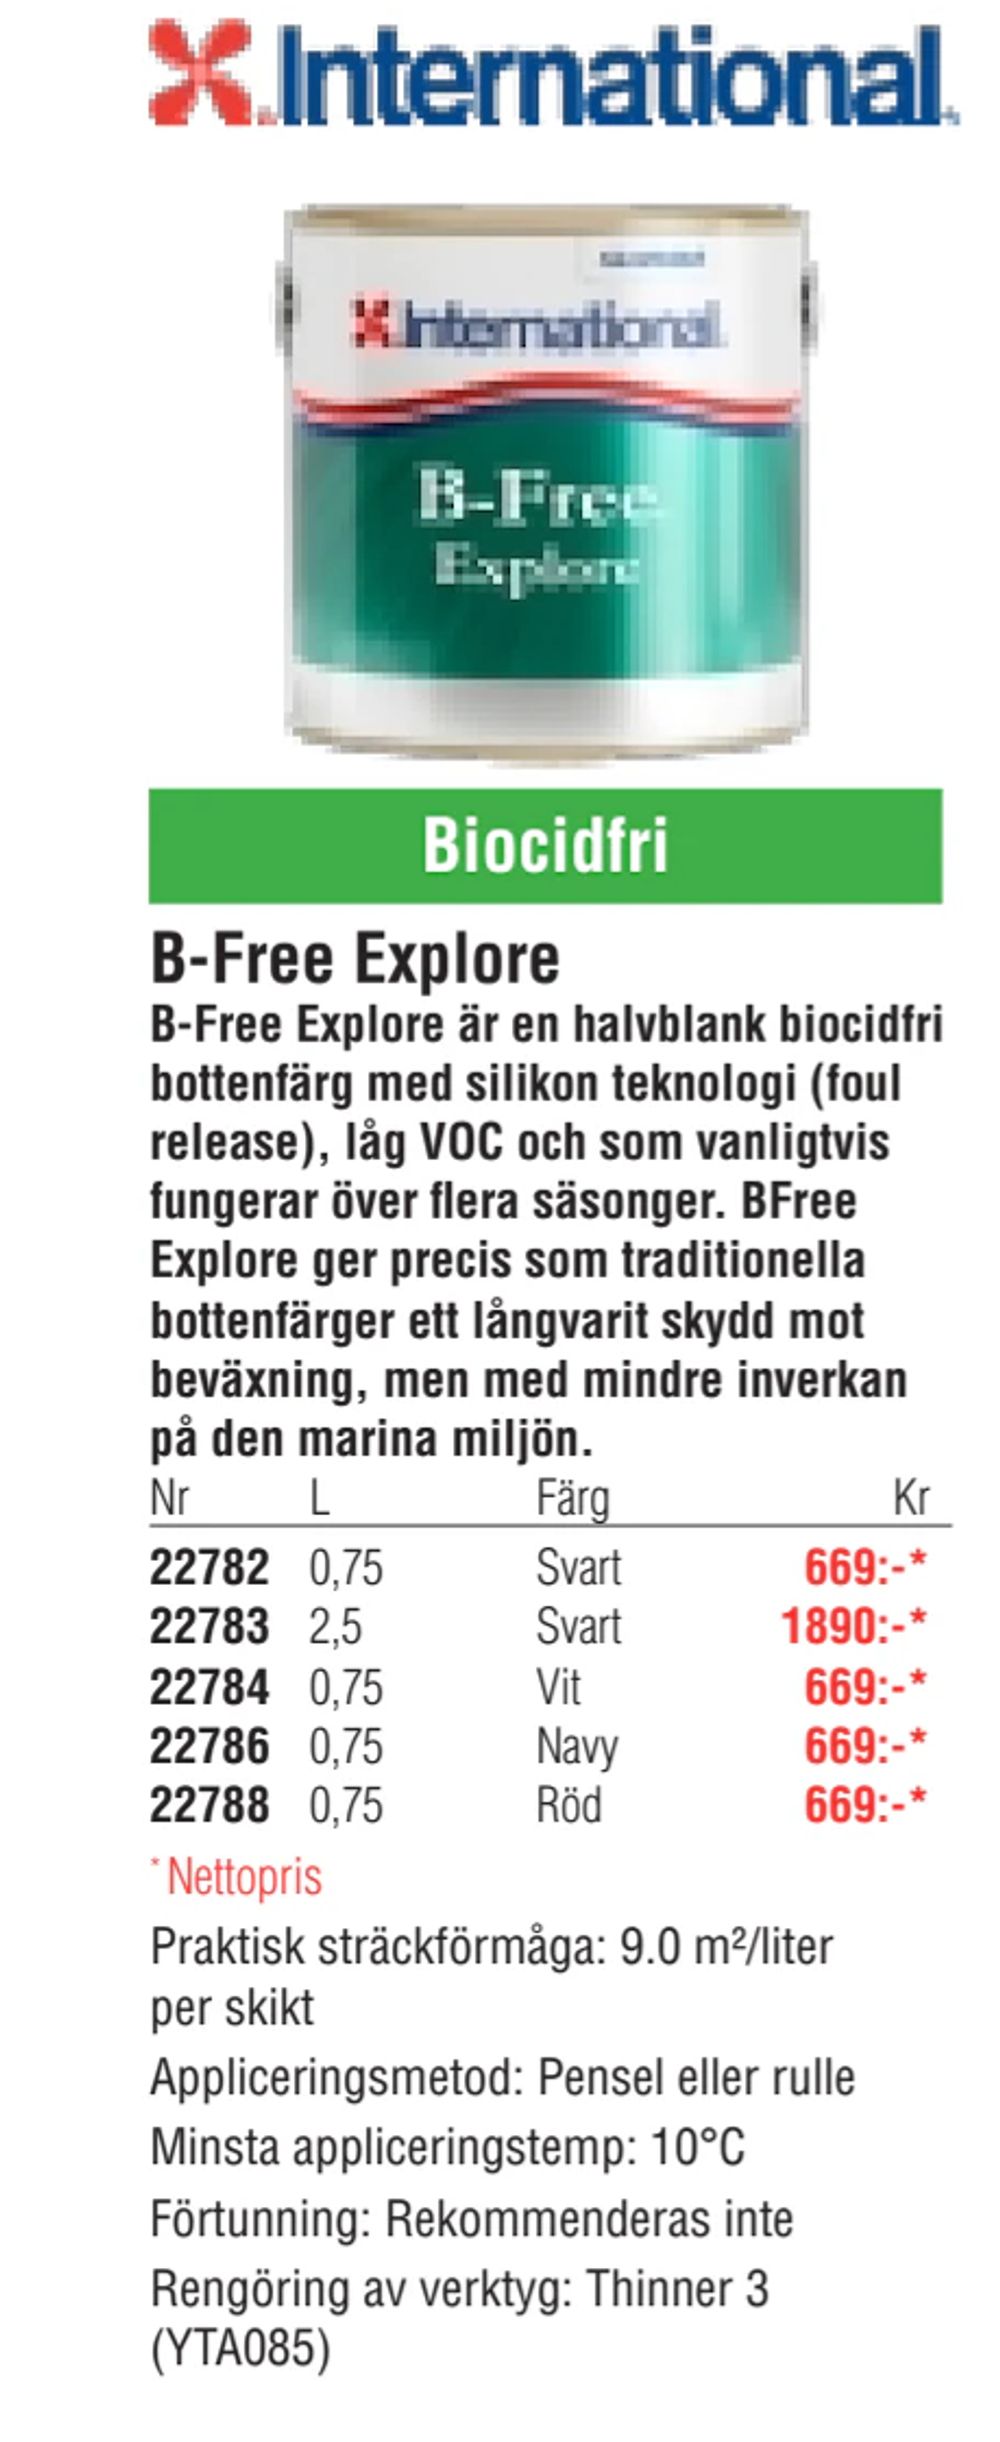 Erbjudanden på B-Free Explore från Erlandsons Brygga för 669 kr